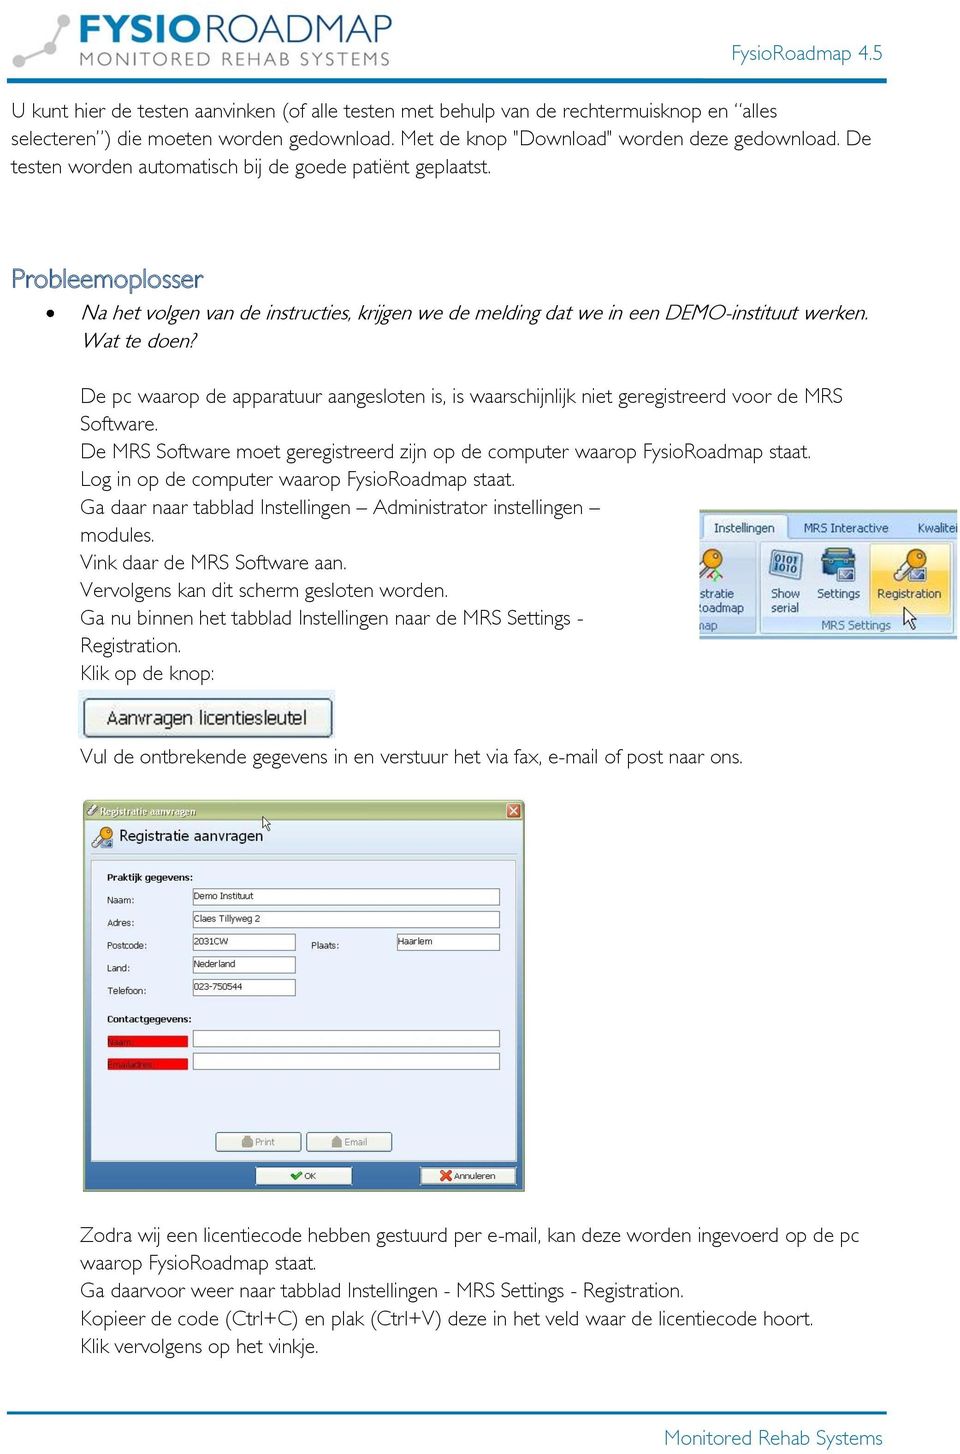 De pc waarop de apparatuur aangesloten is, is waarschijnlijk niet geregistreerd voor de MRS Software. De MRS Software moet geregistreerd zijn op de computer waarop FysioRoadmap staat.